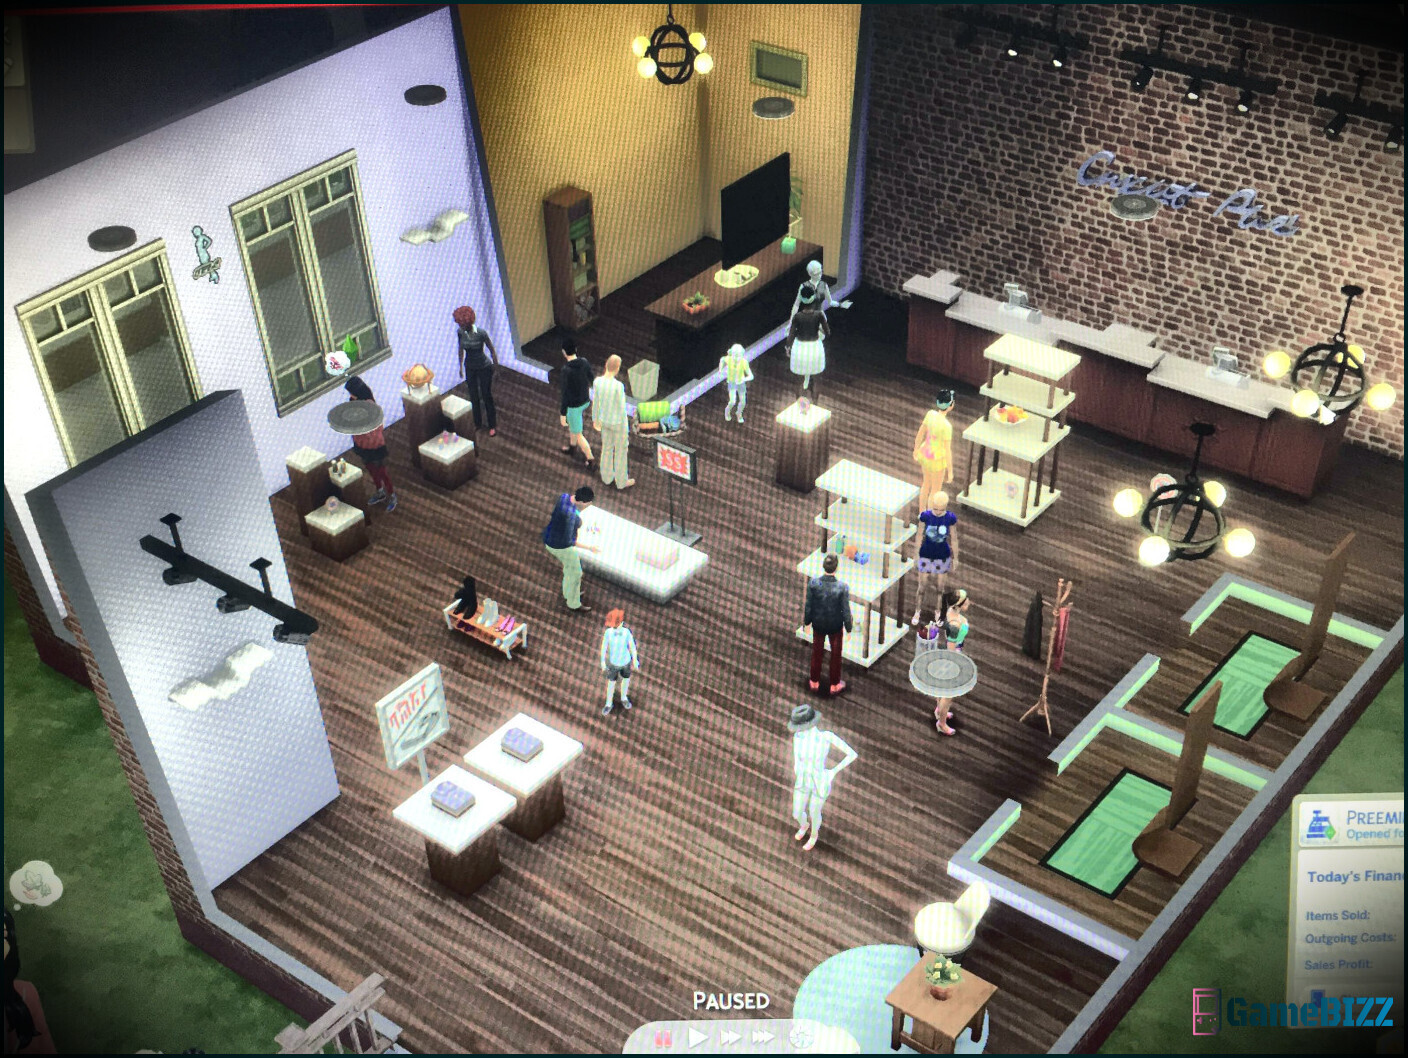 Ein Sims-Shop, der offizielle, von den Spielen inspirierte Artikel verkauft, ist jetzt geöffnet